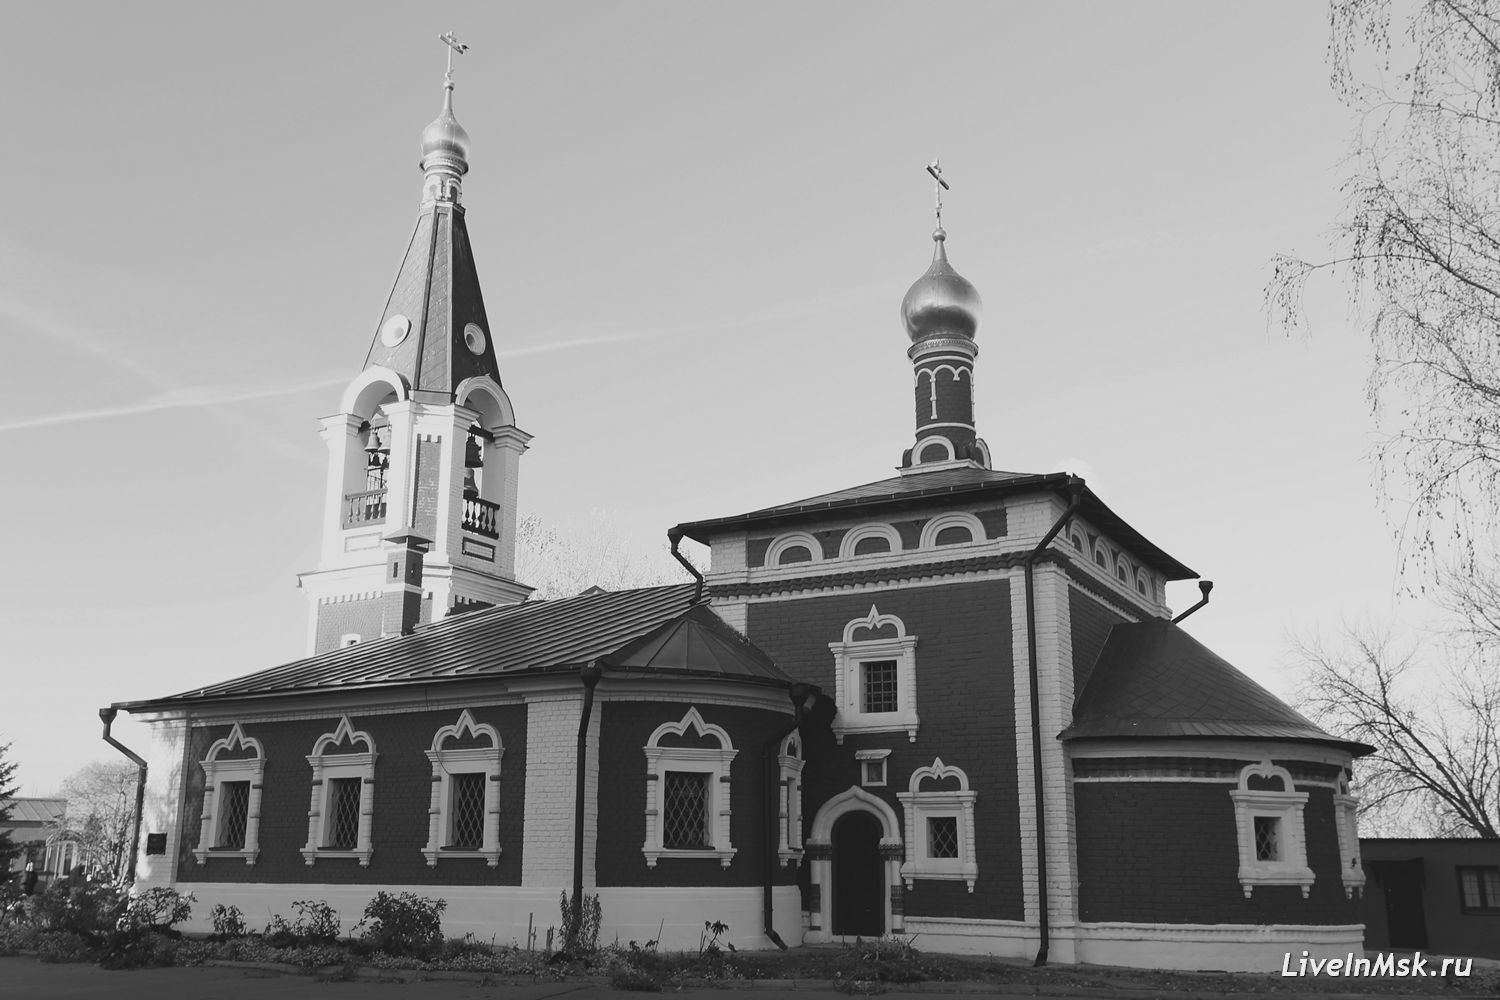 Никольский храм в Сабурове, фото 2018 года